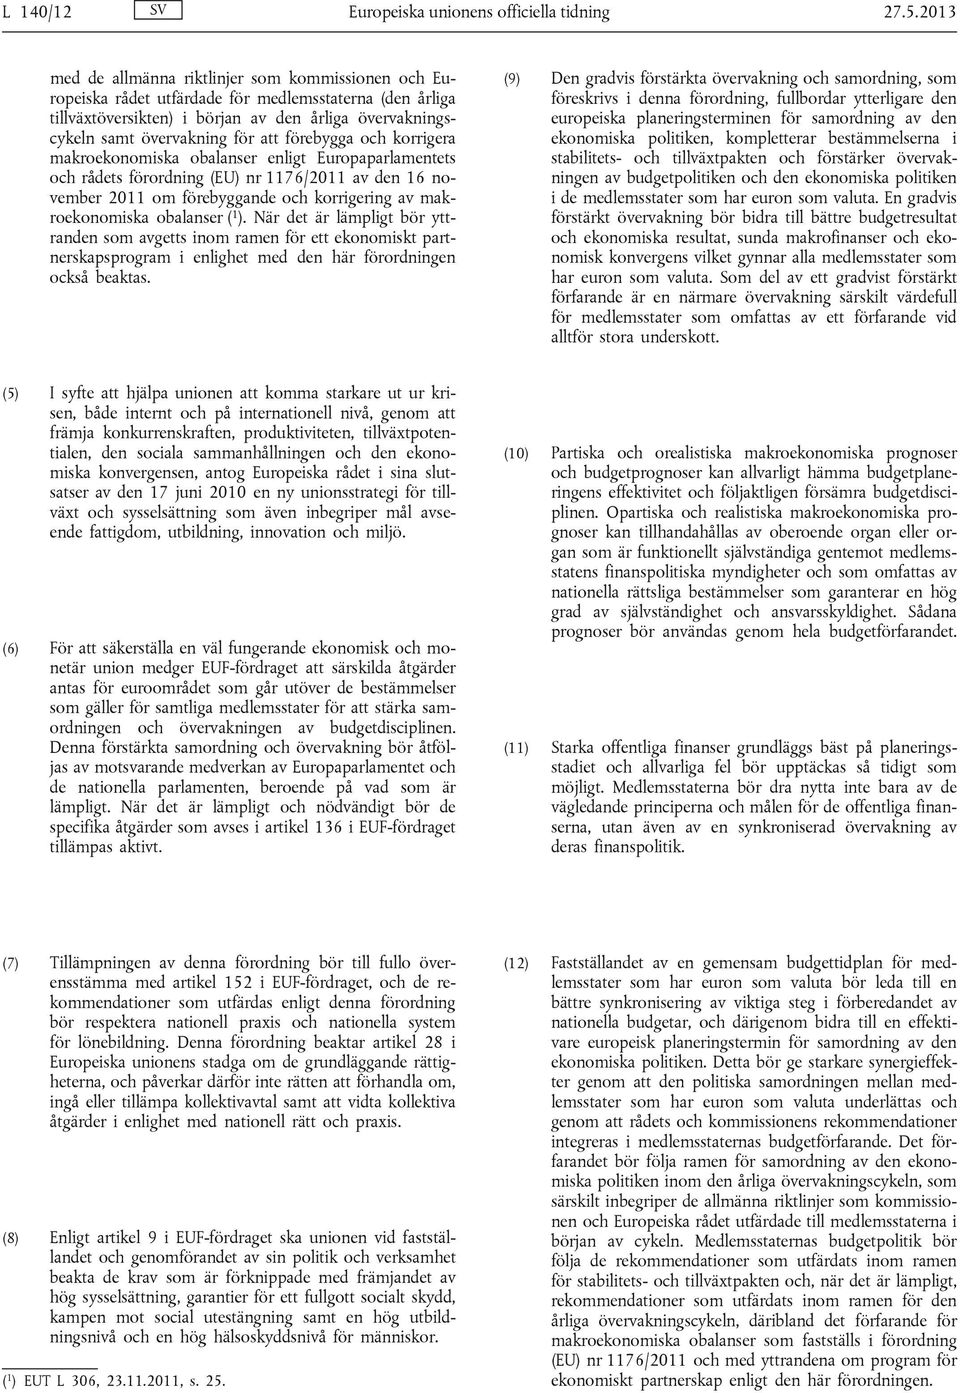 förebygga och korrigera makroekonomiska obalanser enligt Europaparlamentets och rådets förordning (EU) nr 1176/2011 av den 16 november 2011 om förebyggande och korrigering av makroekonomiska